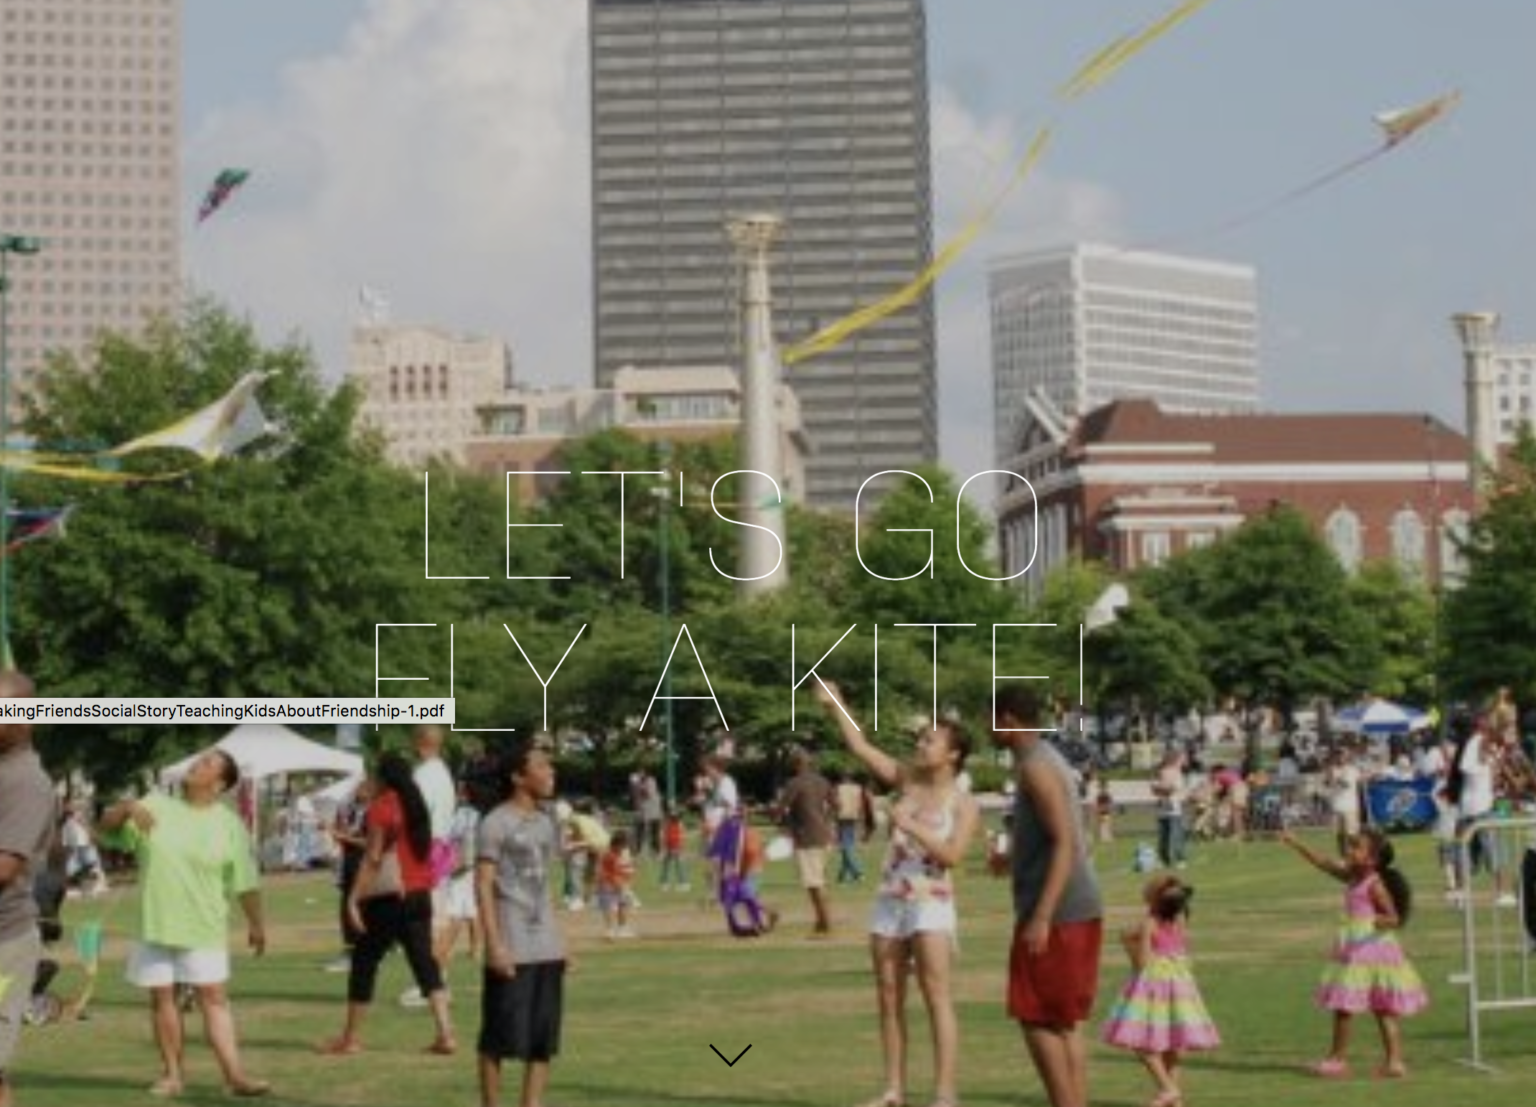 Atlanta World Kite Festival and Expo Goes Virtual